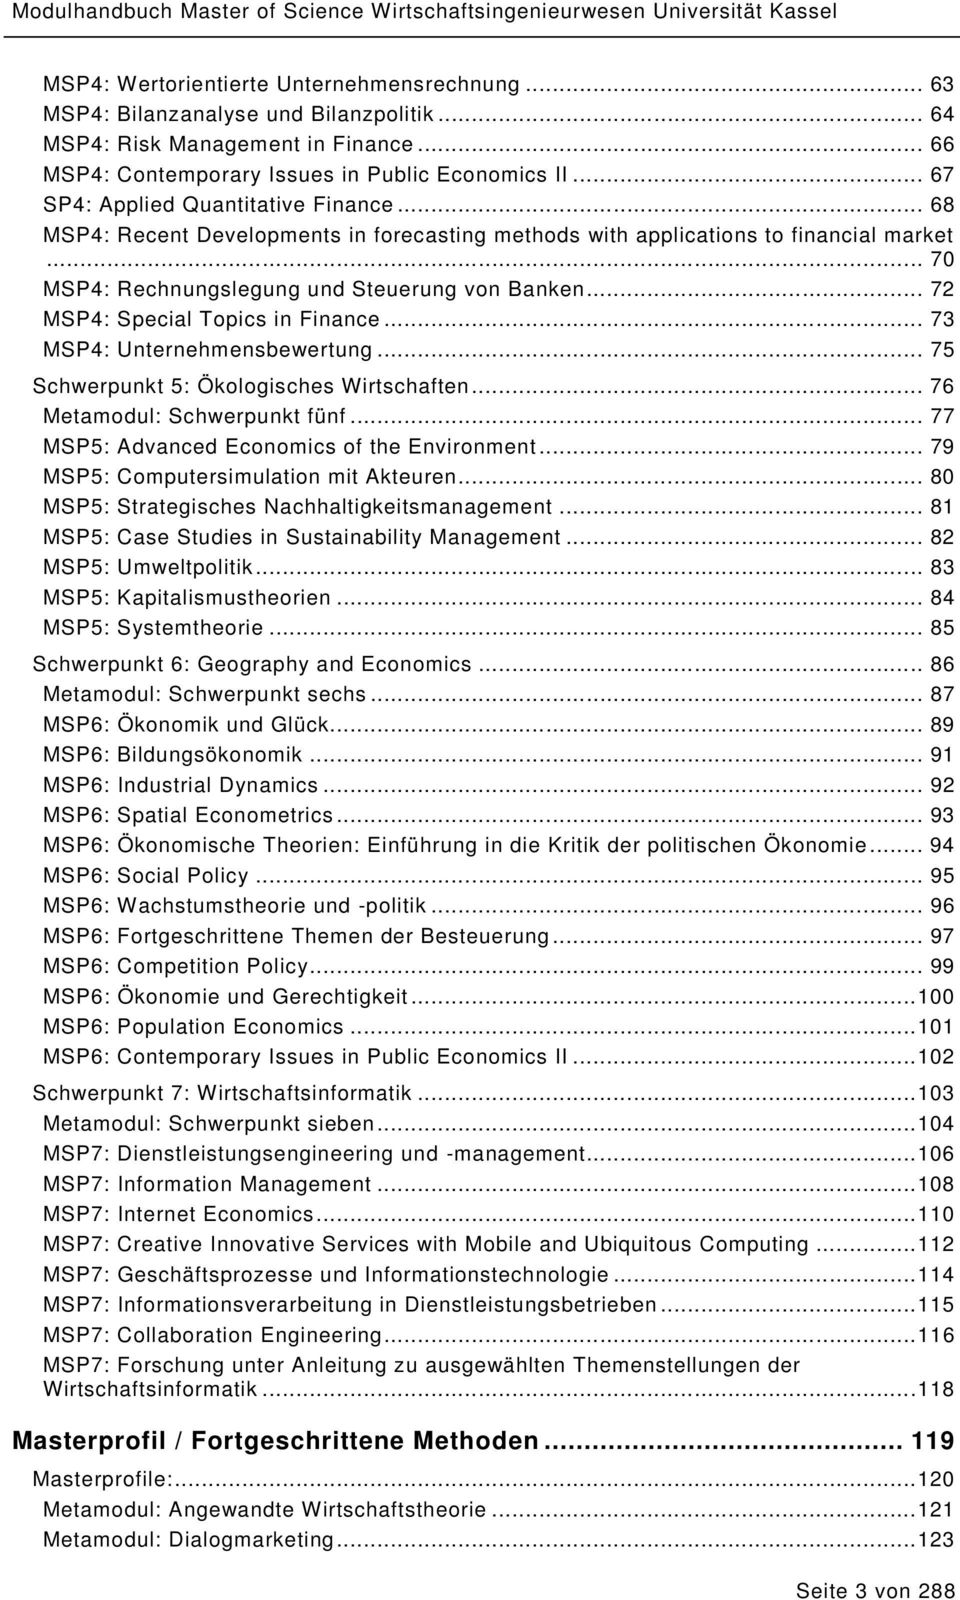 .. 72 MSP4: Special Topics in Finance... 73 MSP4: Unternehmensbewertung... 75 Schwerpunkt 5: Ökologisches Wirtschaften... 76 Metamodul: Schwerpunkt fünf.